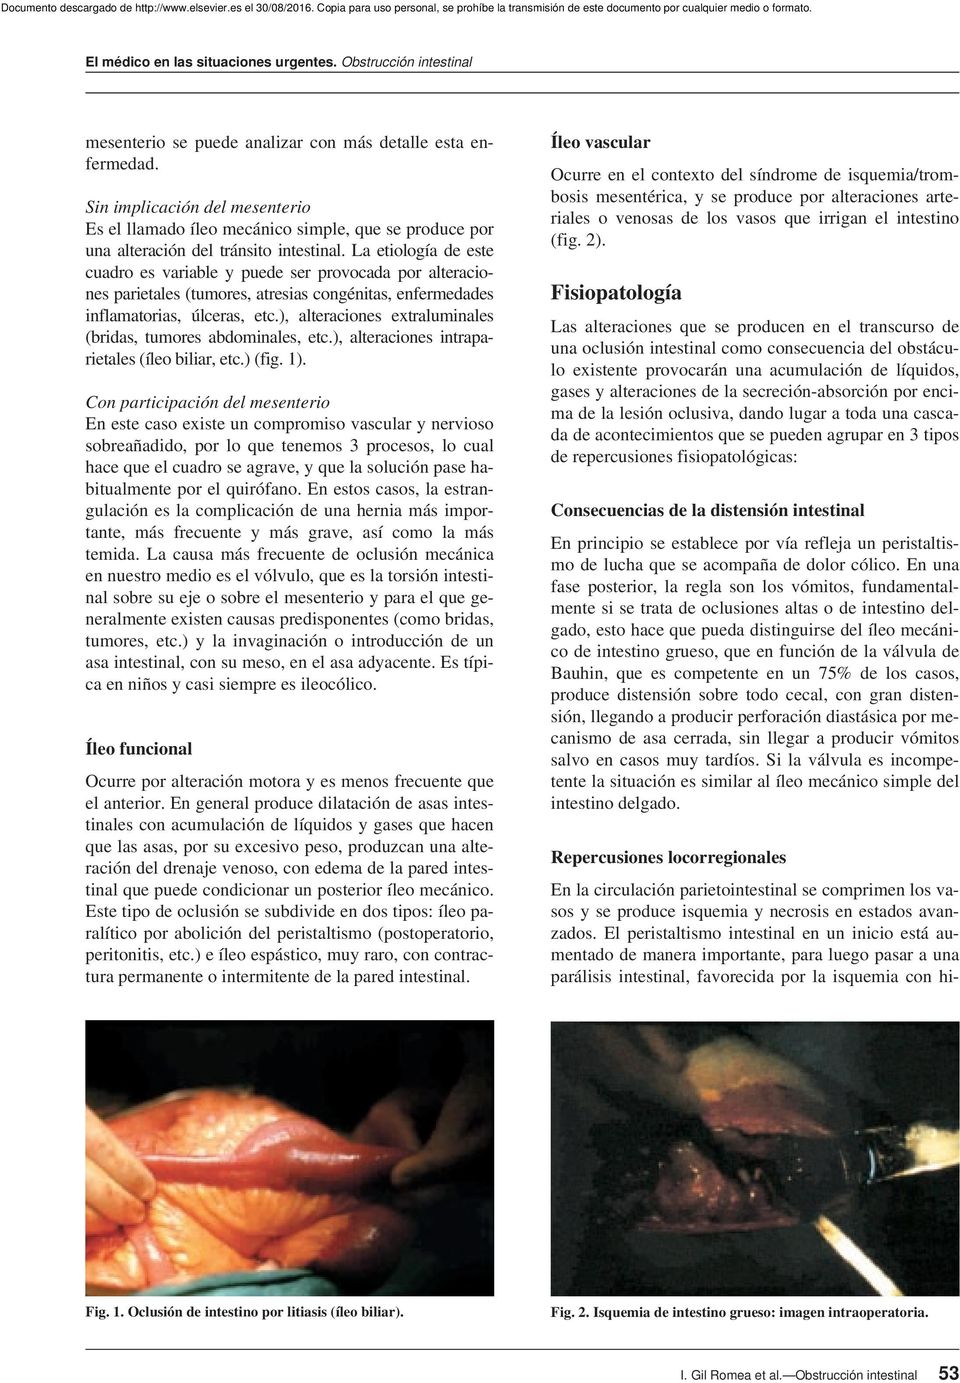 ), alteraciones extraluminales (bridas, tumores abdominales, etc.), alteraciones intraparietales (íleo biliar, etc.) (fig. 1).